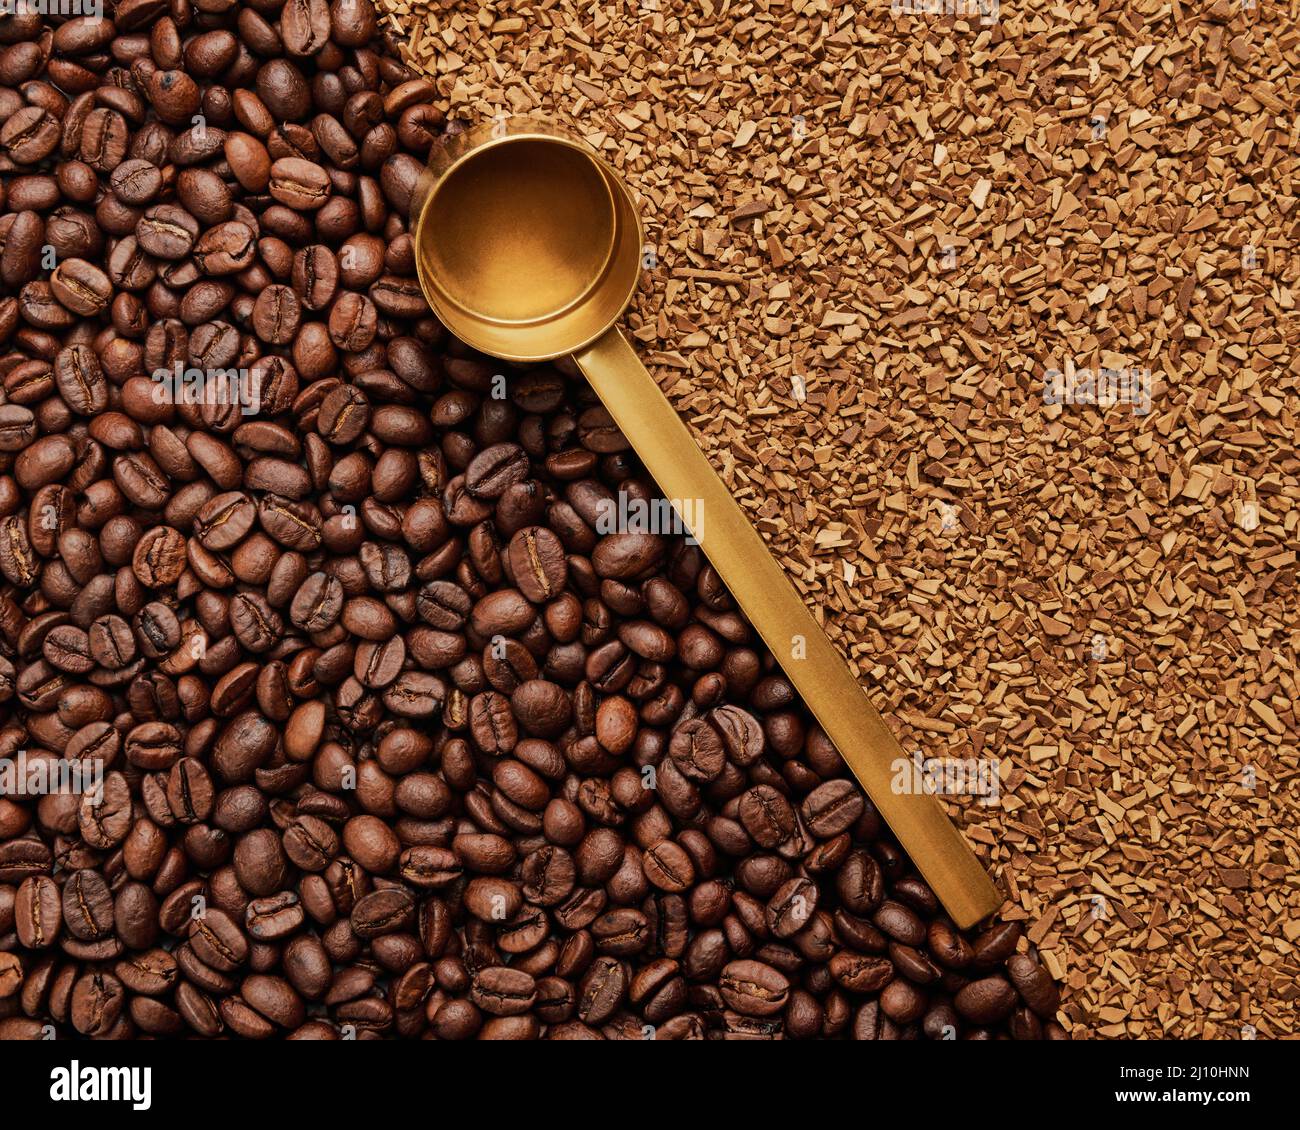 Hintergrund von frisch gerösteten Kaffeebohnen und Instant-Kaffee mit einem goldenen Messlöffel Stockfoto